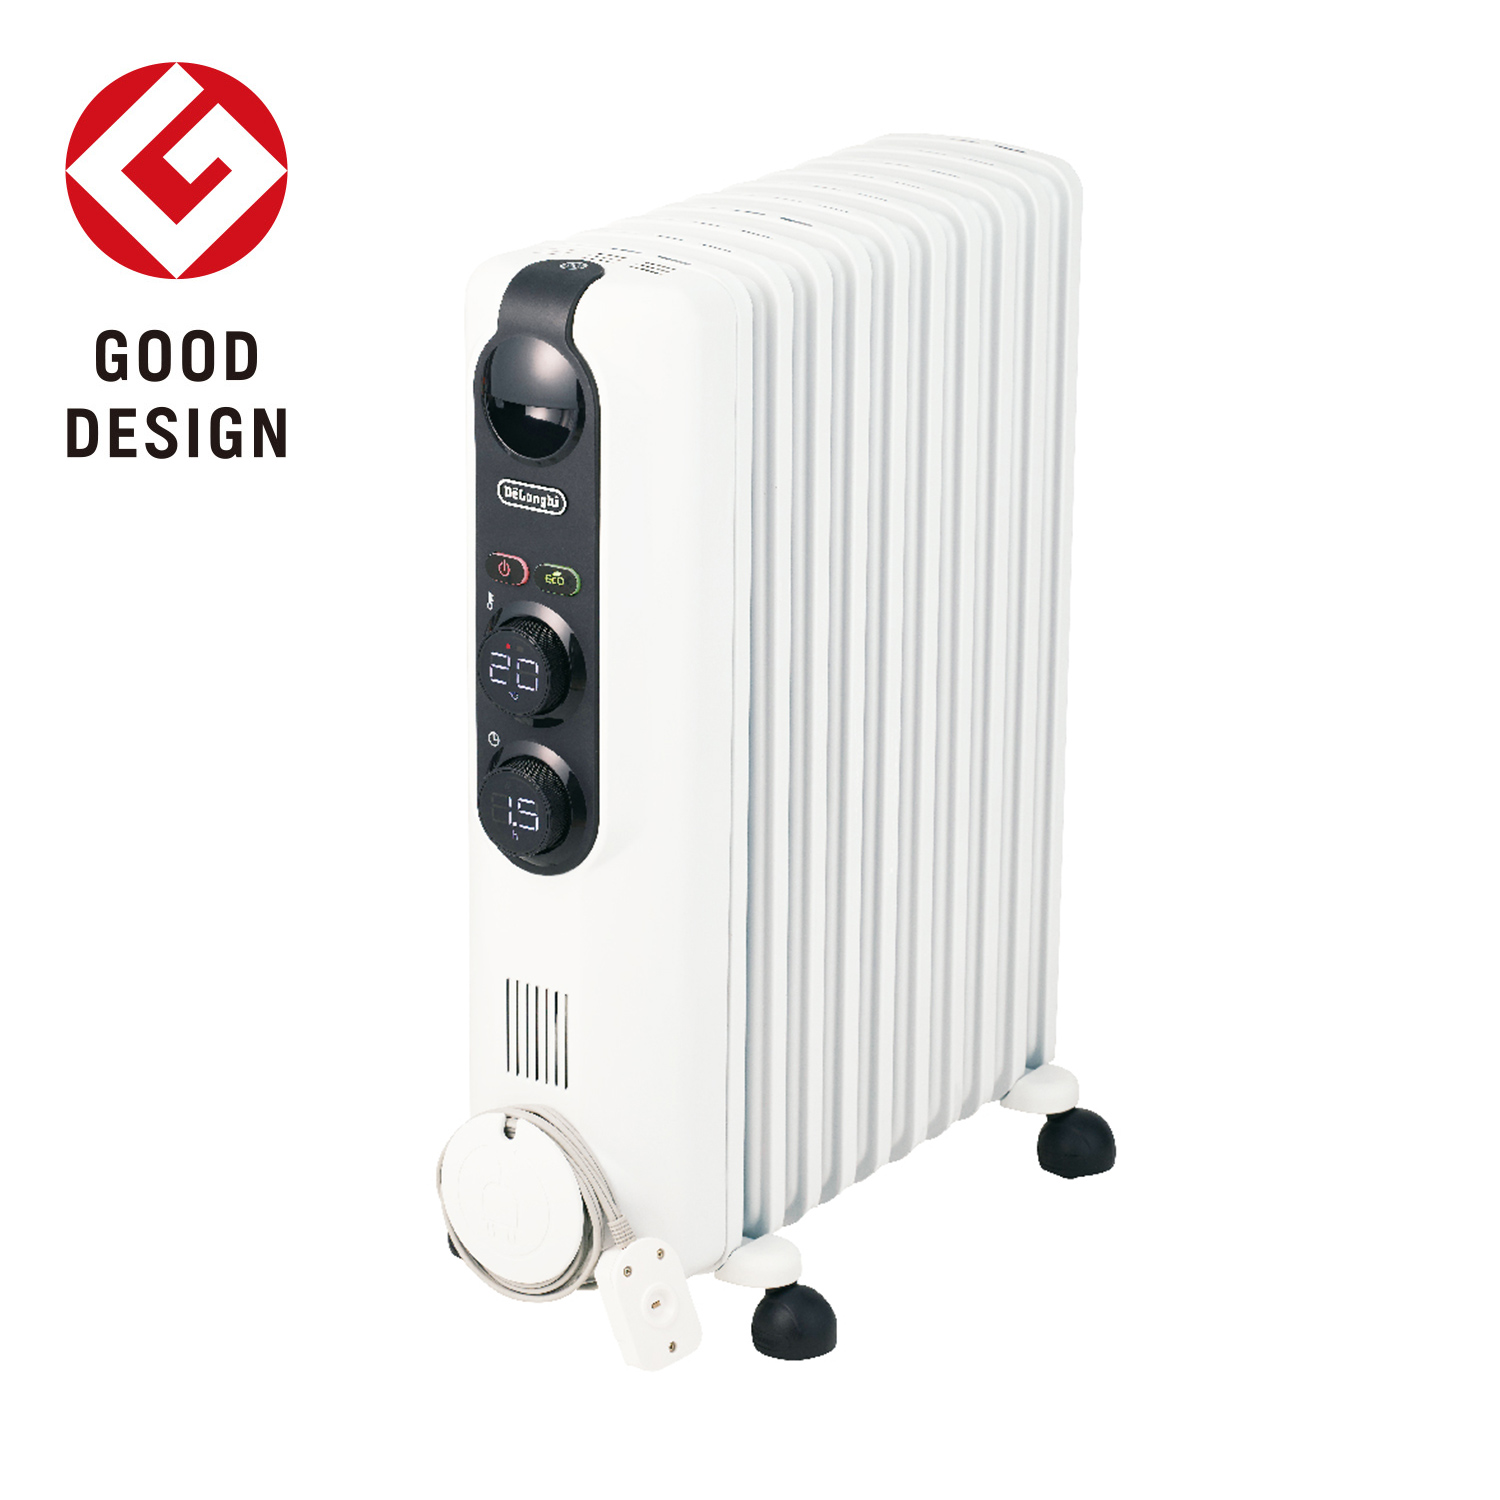 冷暖房/空調 オイルヒーター デロンギ オイルヒーター RHJ35M1015-BK |ゼロ風暖房 デロンギ ヒーター